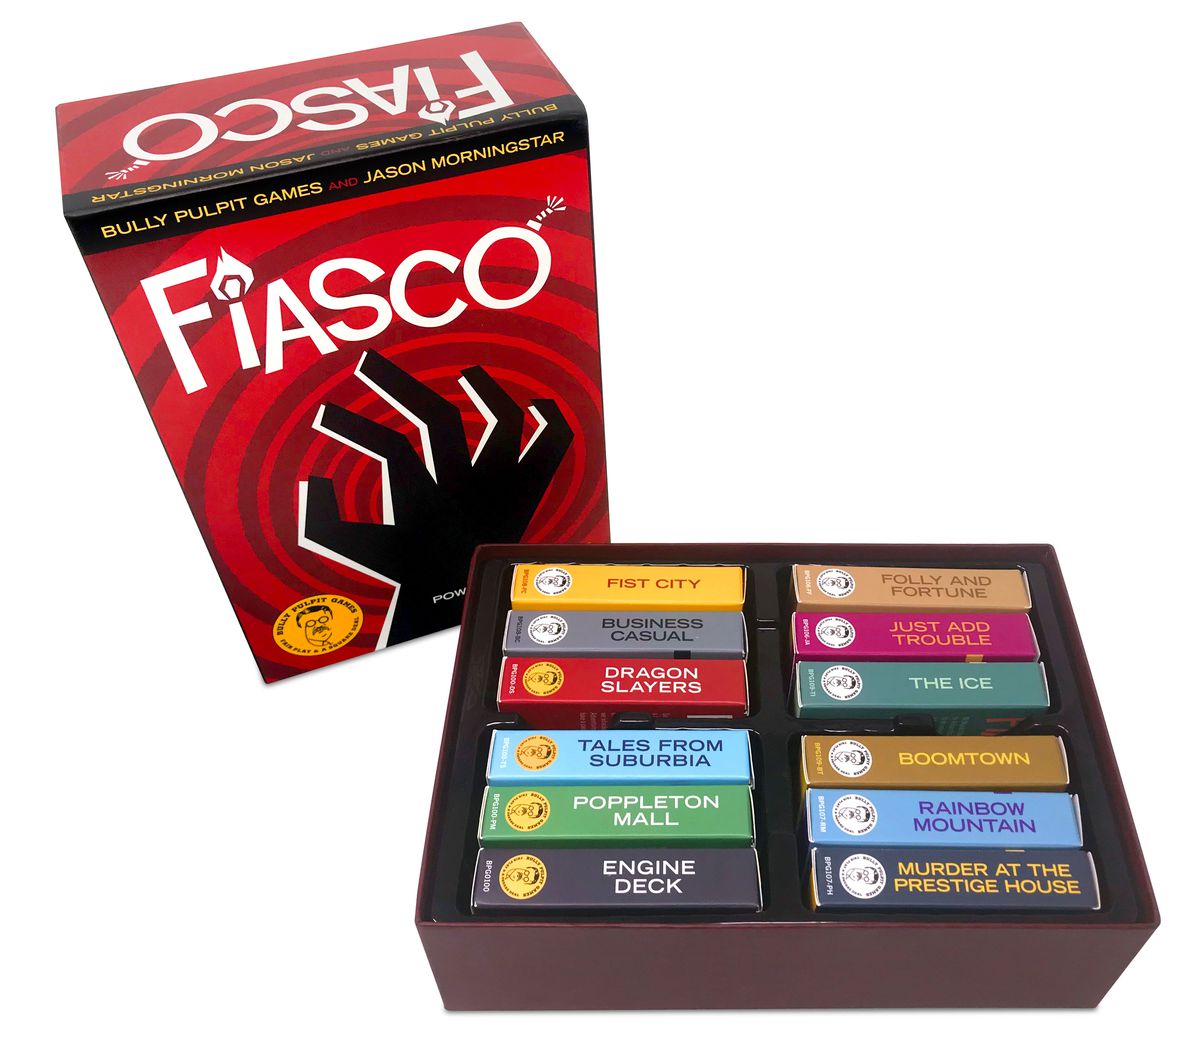 La version en boîte de Fiasco, qui comprend 12 jeux de cartes intitulés Fist City, Folly and Fortune, Dragon Slayers, Poppleton Mall, Boomtown, etc.